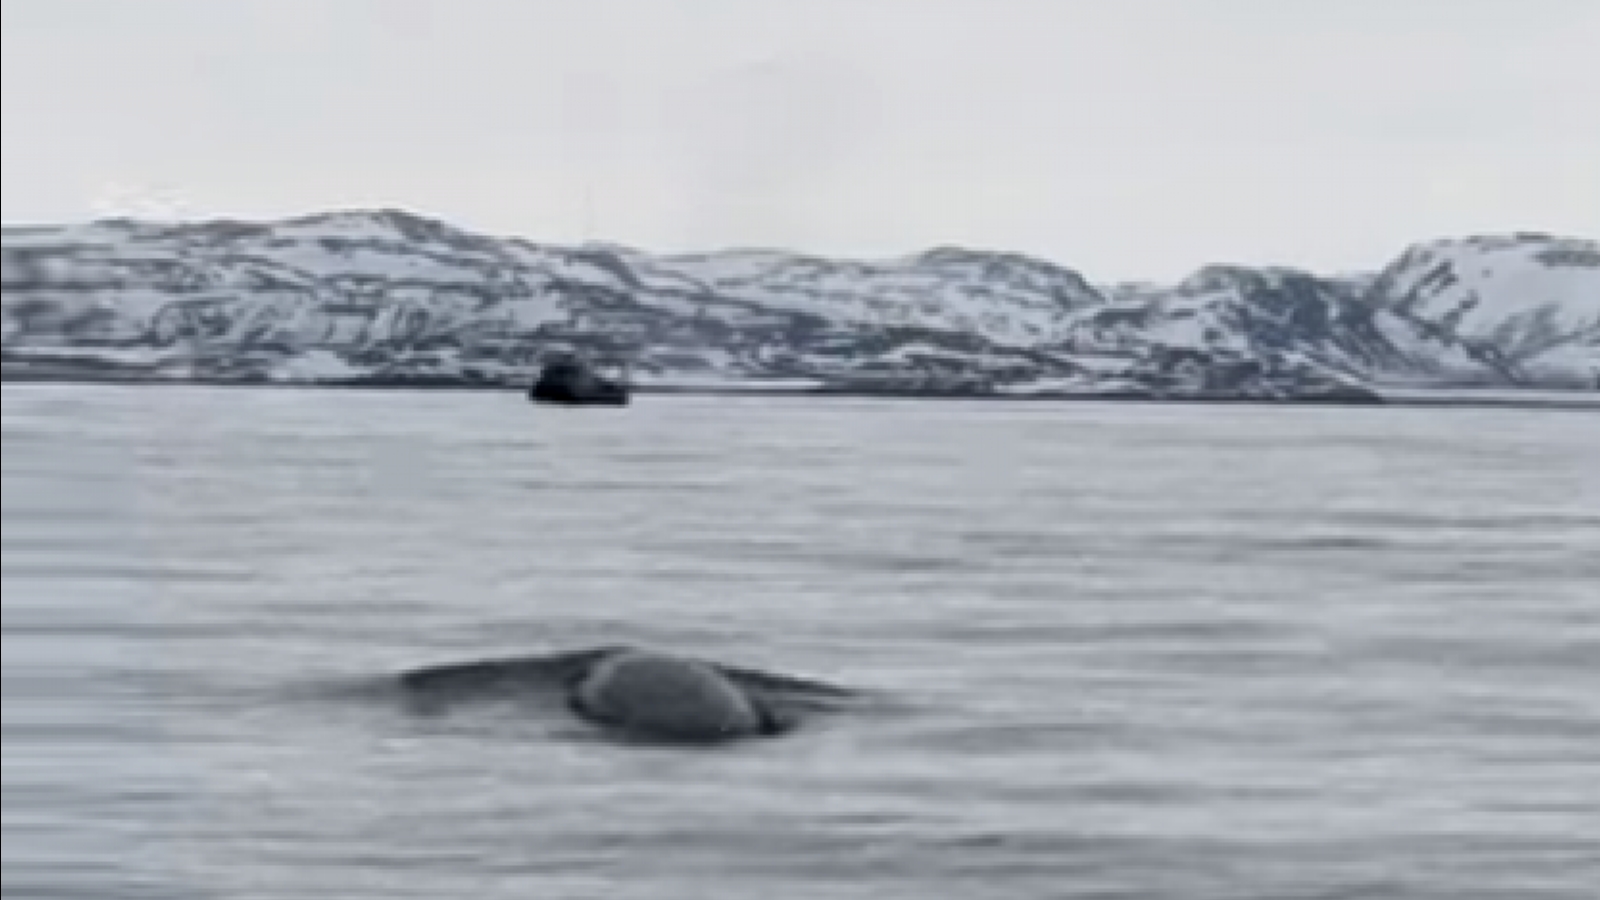 Китовый сезон в Териберке продолжается [видео]